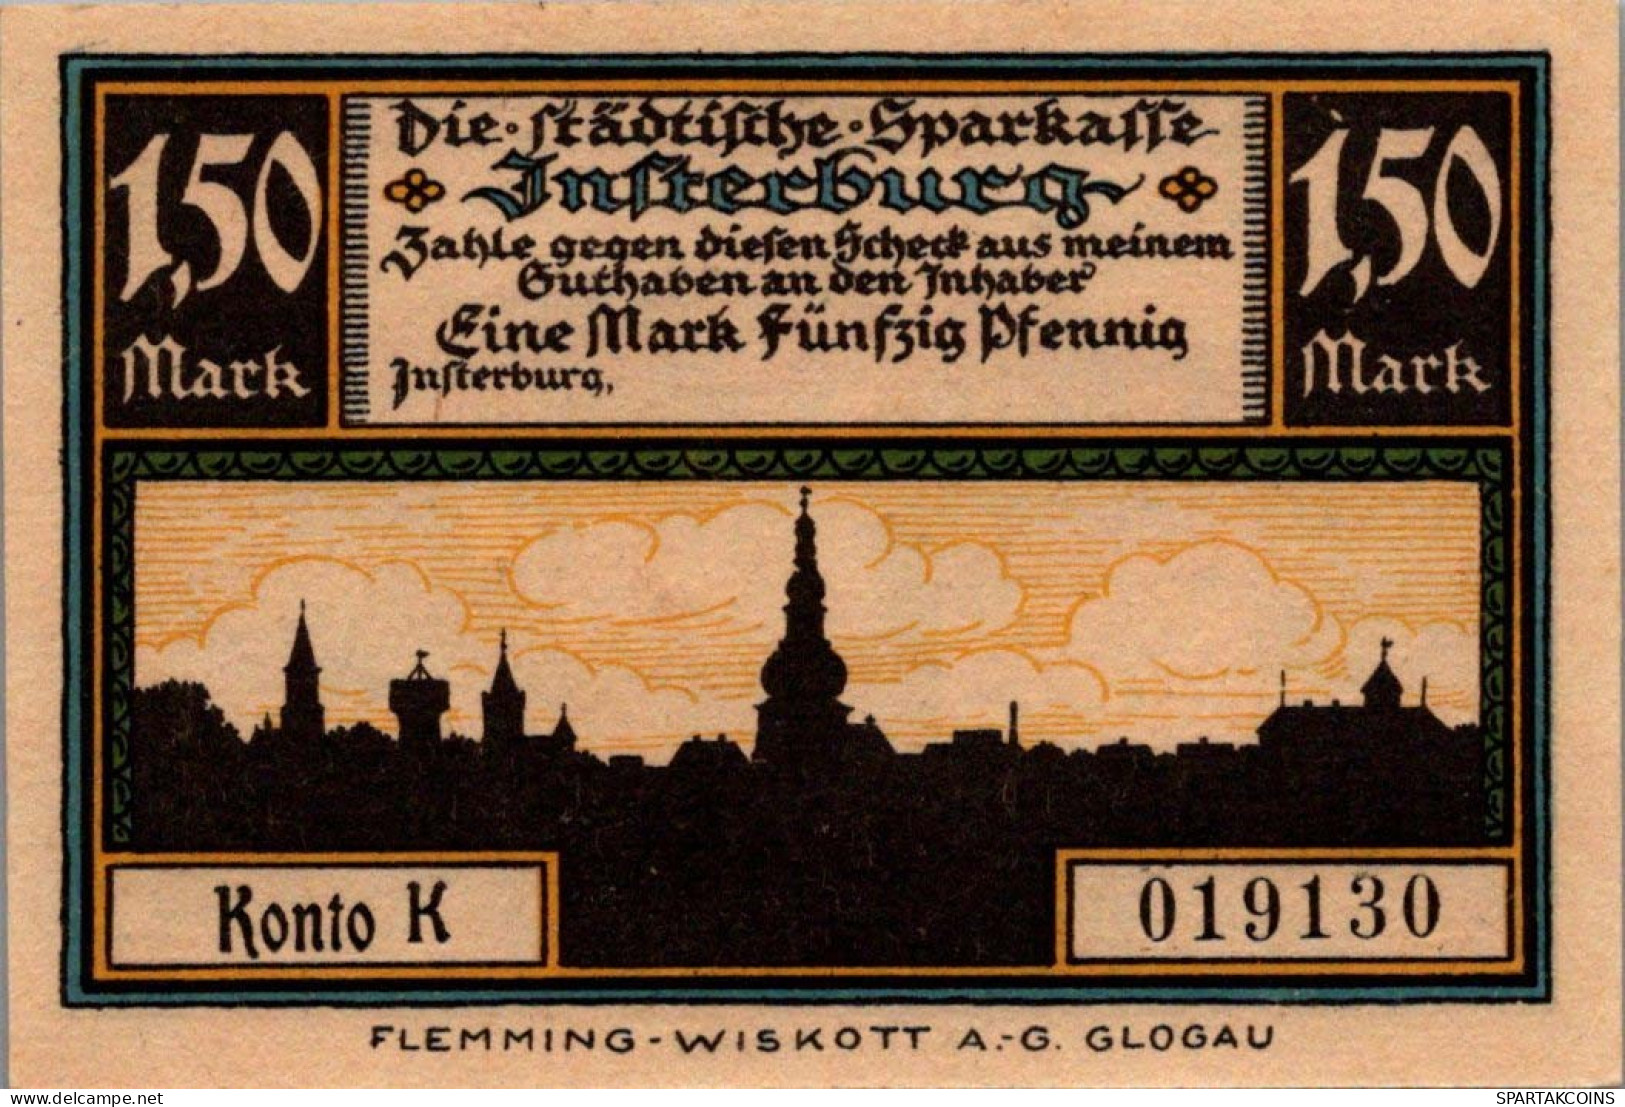 1.5 MARK 1914-1924 Stadt INSTERBURG East PRUSSLAND UNC DEUTSCHLAND Notgeld #PD136 - [11] Emisiones Locales